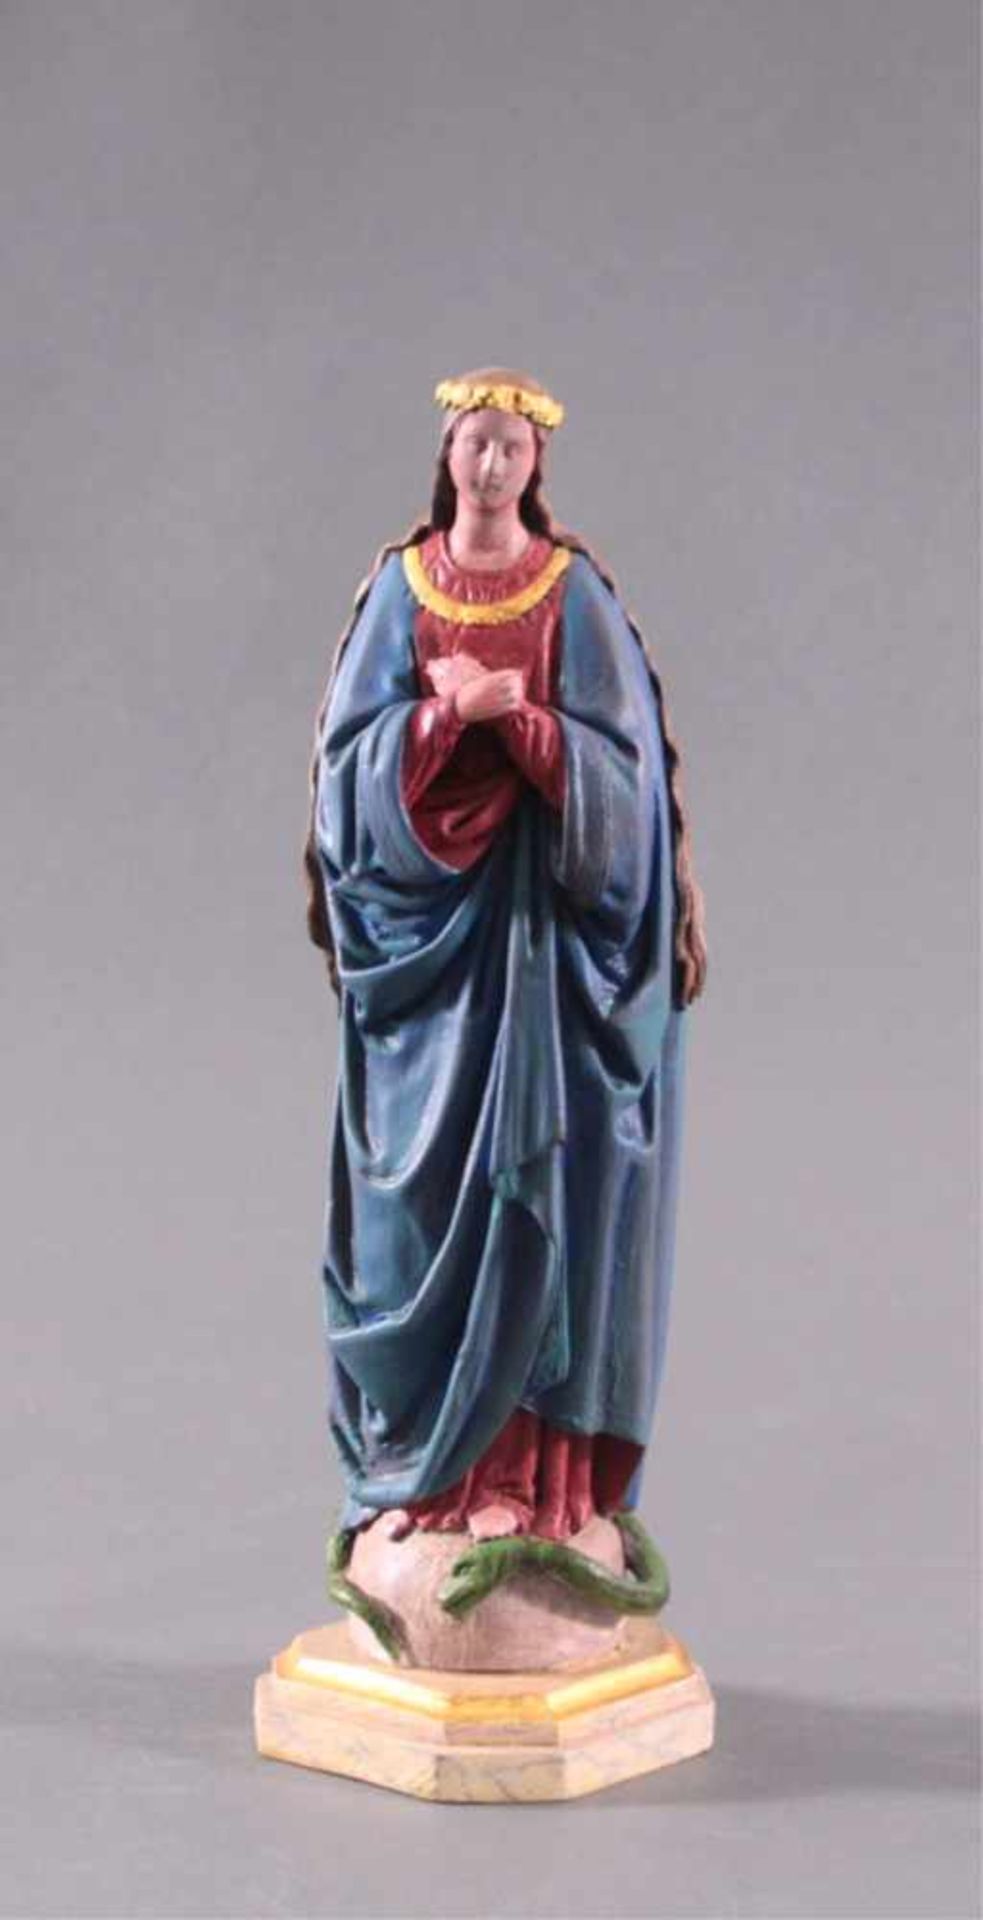 Heiligenfigur, 19. JahrhundertHolz geschnitzt, farbig gefasst, teilweise vergoldet. Mariaüber